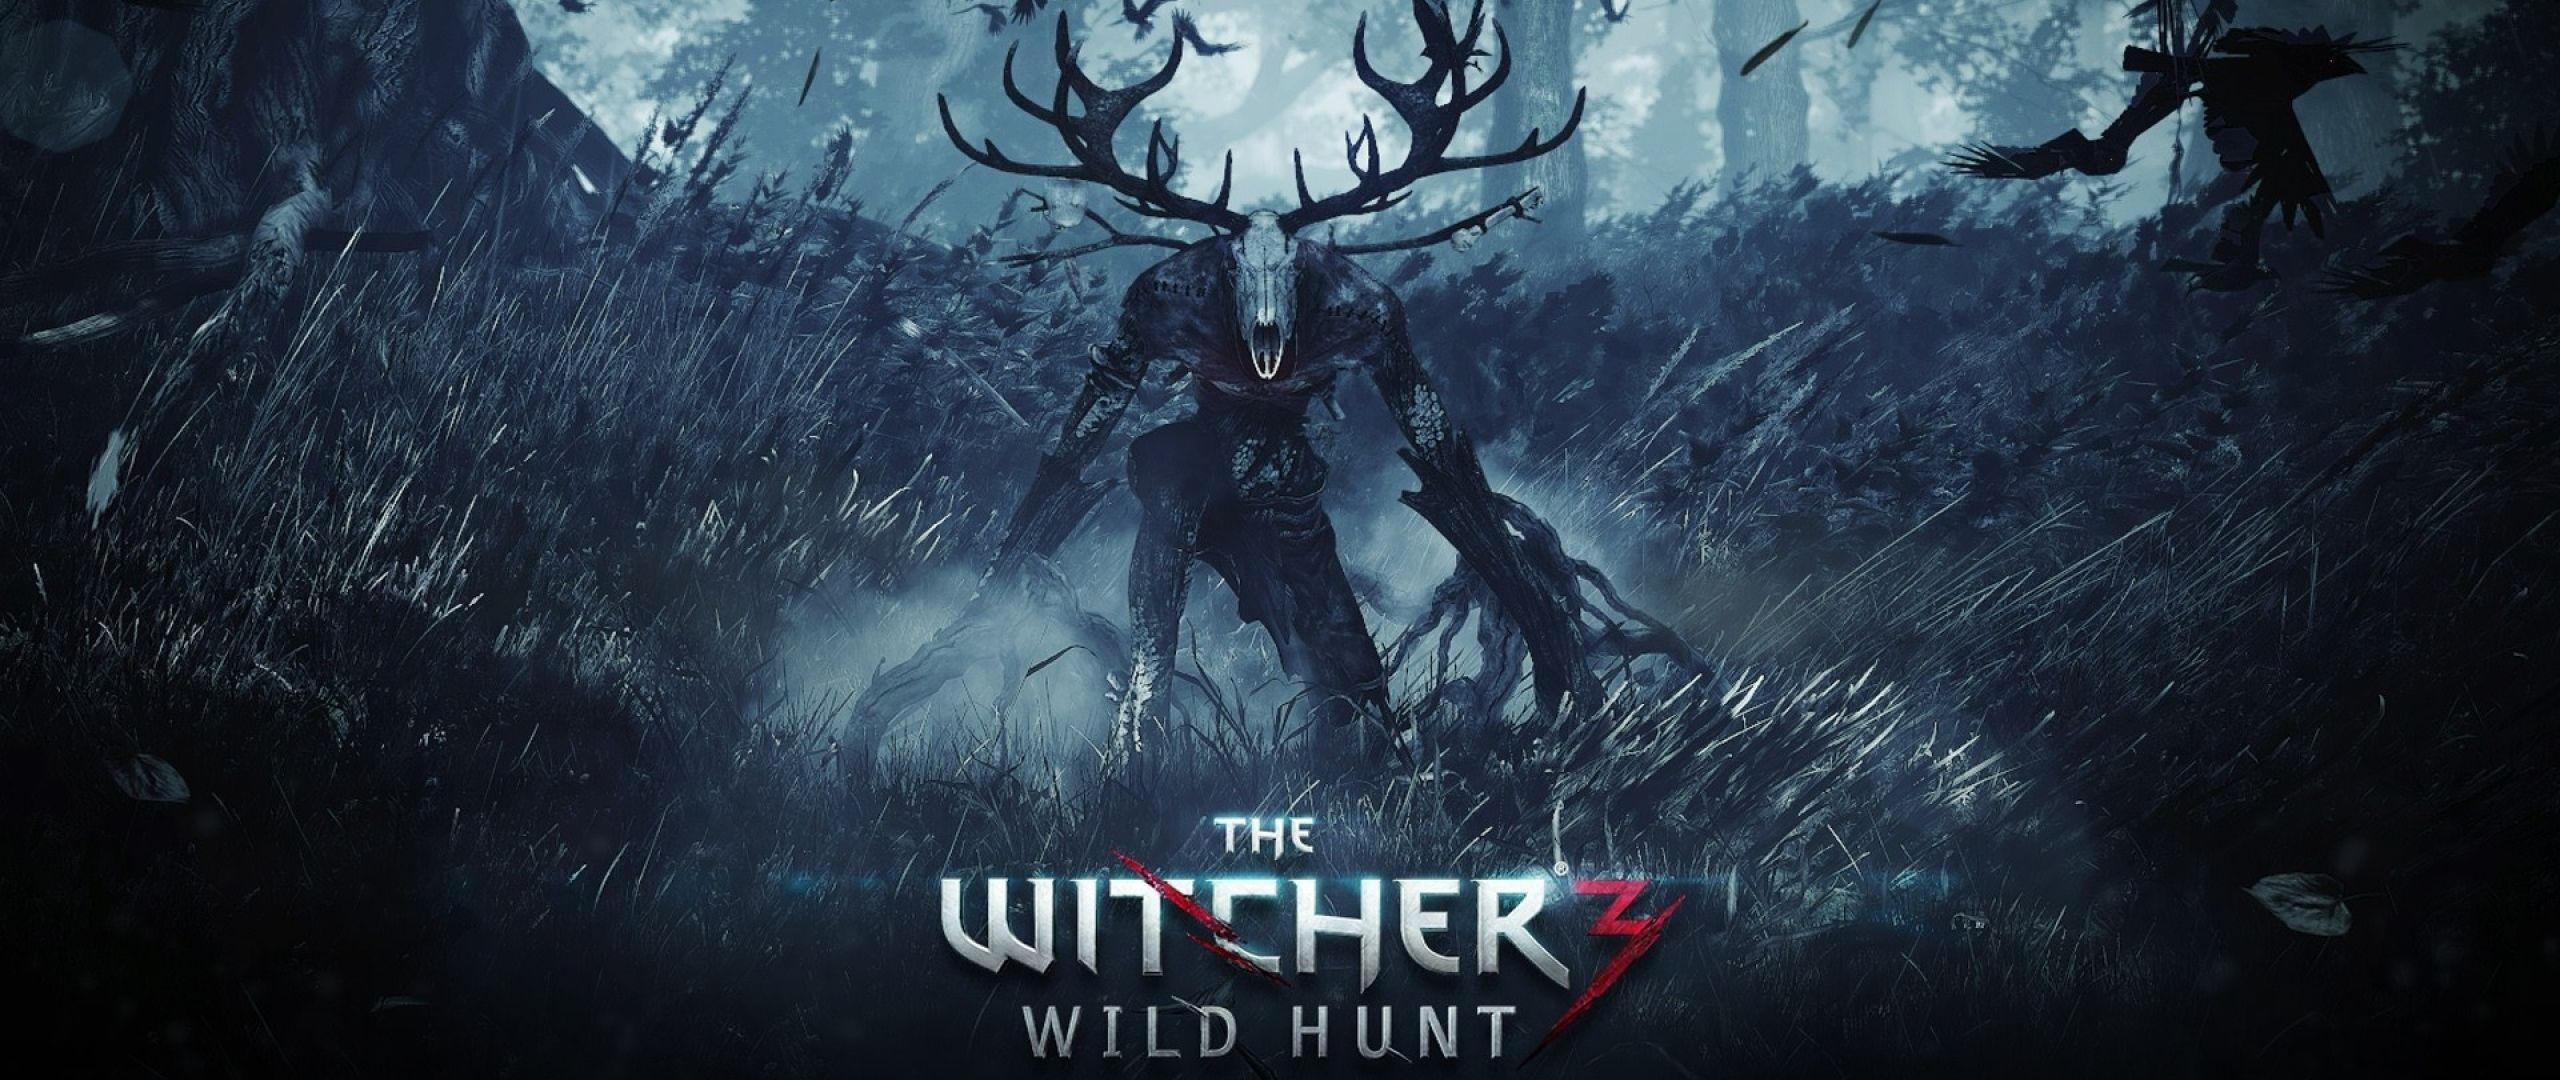 2560x1080 21:9 TV The witcher 3 wild hunt Wallpapers HD, Desktop